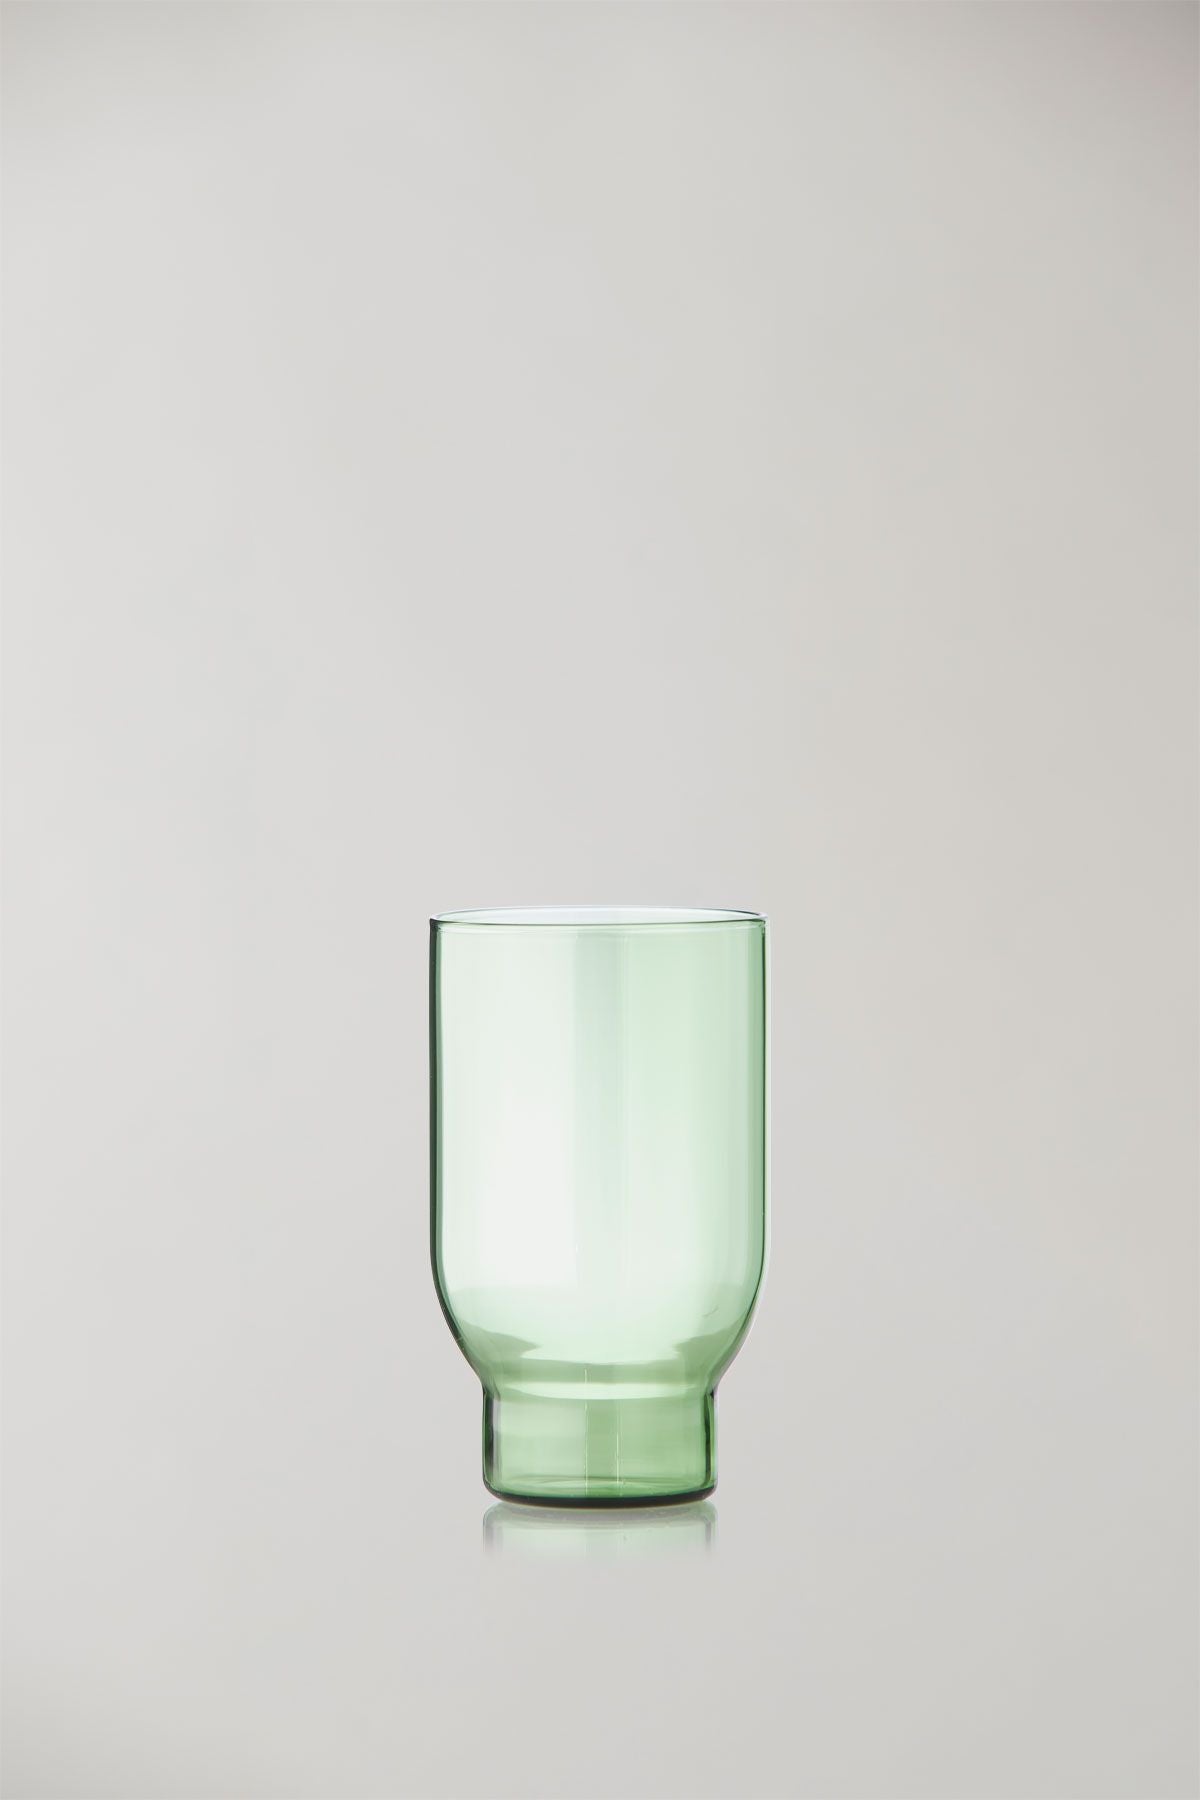 Studio sur l'ensemble de verrerie de 2 verres à eau, vert